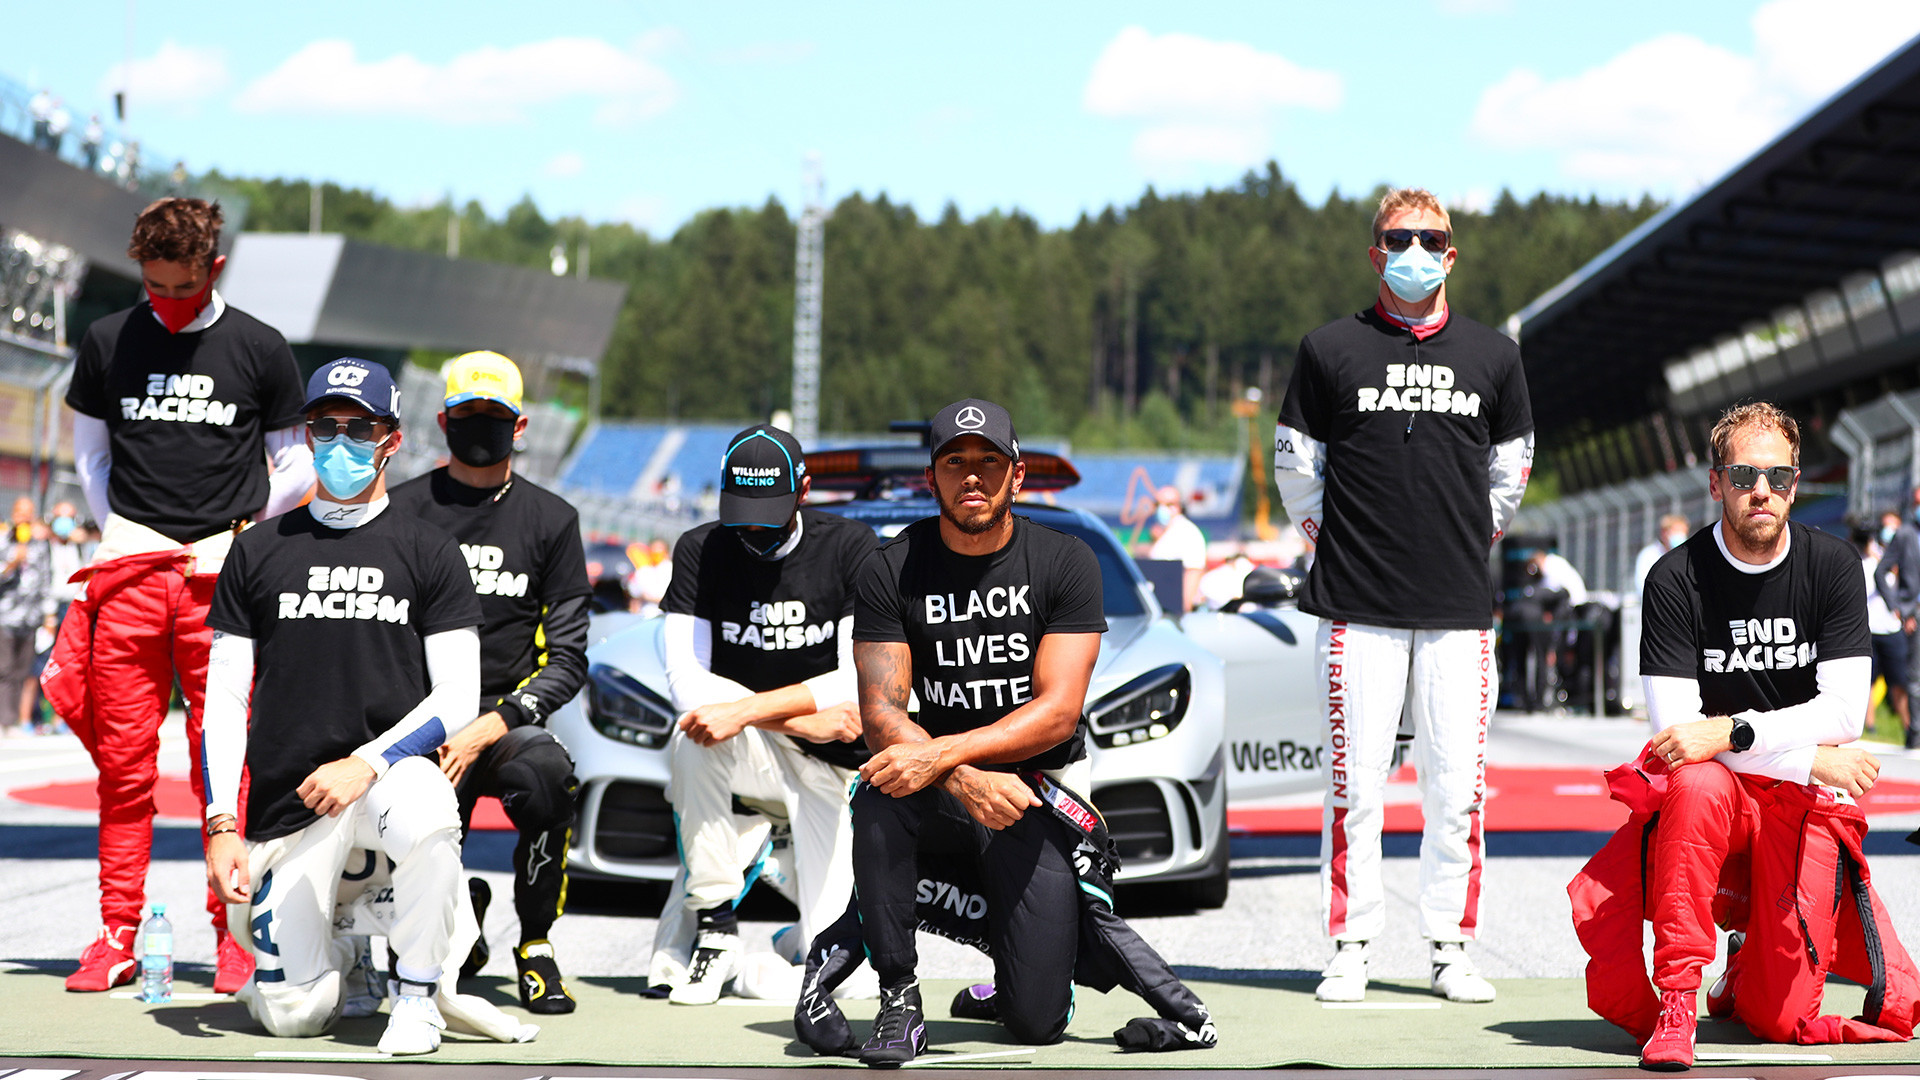 Des pilotes soutiennent le mouvement Black Lives Matter avant le Grand Prix automobile d'Autriche, le dimanche 5 juillet 2020.